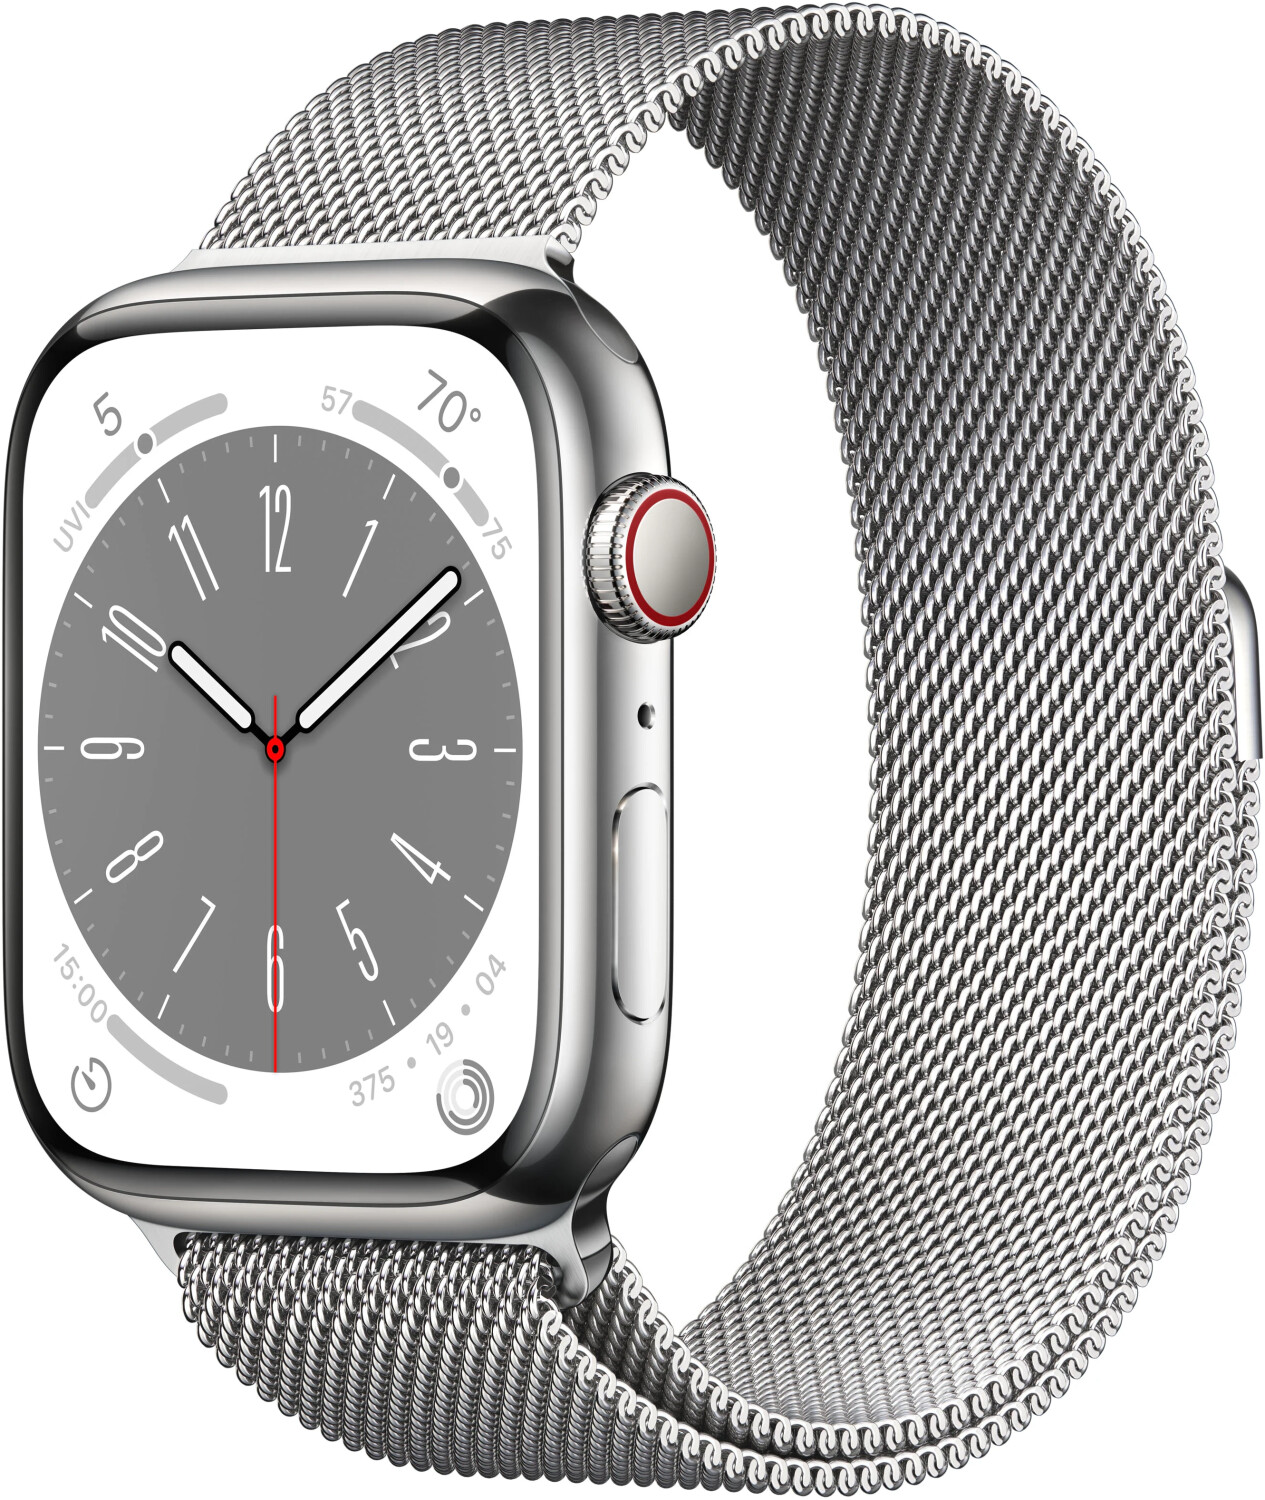 Bild zu 45mm Apple Watch Series 8 Edelstahl (GPS + Cellular) mit Milanaise Armband für 704,37€ (Vergleich: 849€)